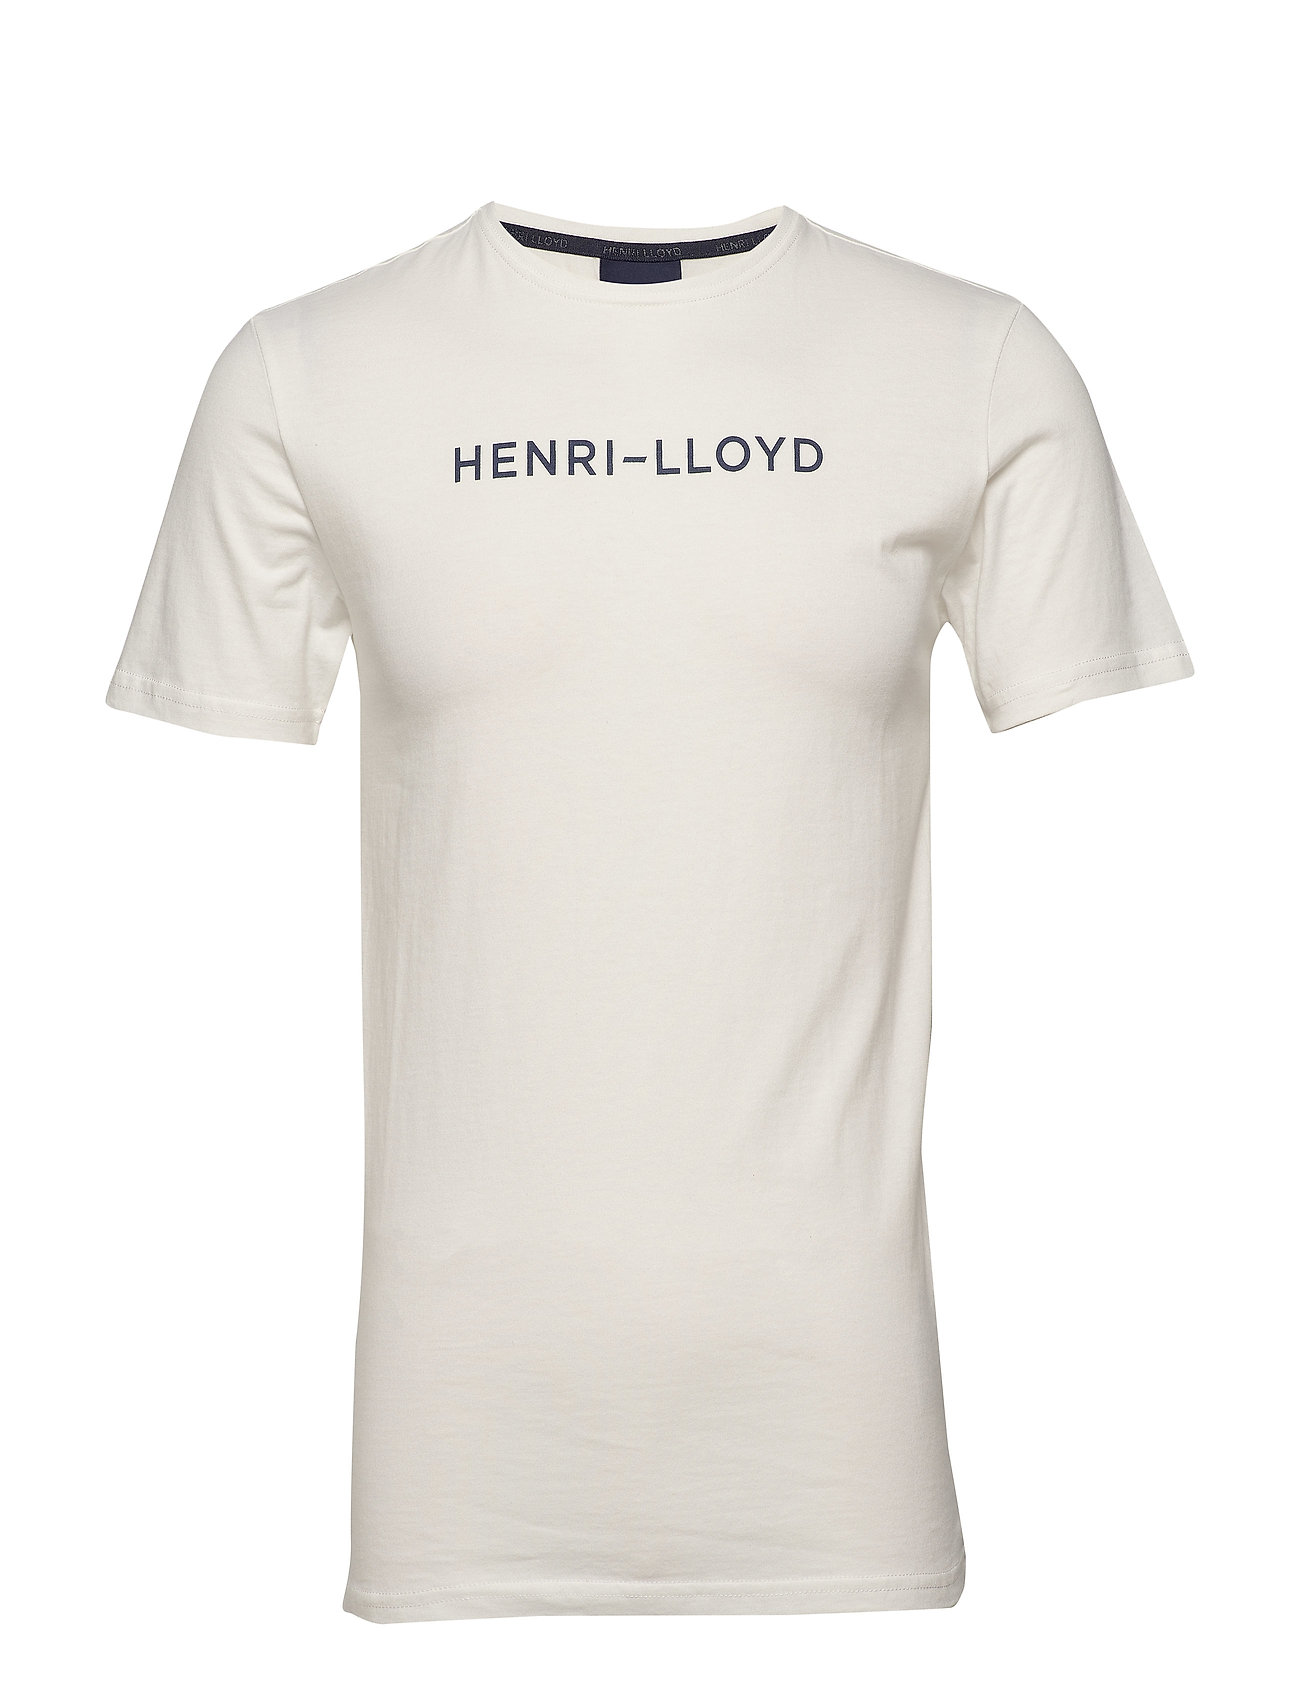 Muligt ost vedvarende ressource Hvid Henri Lloyd Mav Cotton Tee T-shirt Hvid Henri Lloyd kortærmede  t-shirts for herre - Pashion.dk